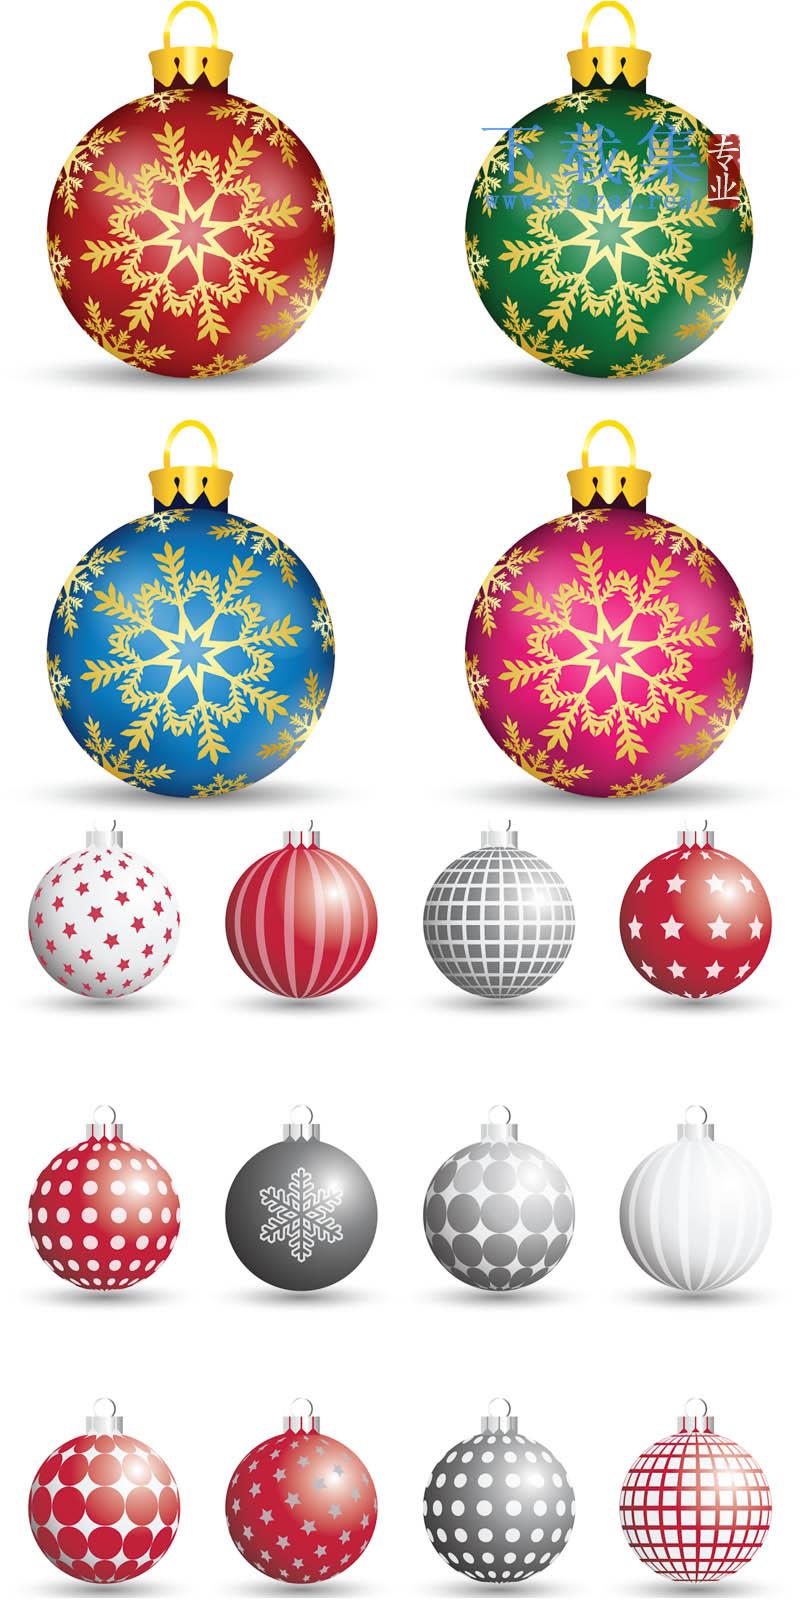 圣诞节圣诞树球形装饰品AI矢量素材